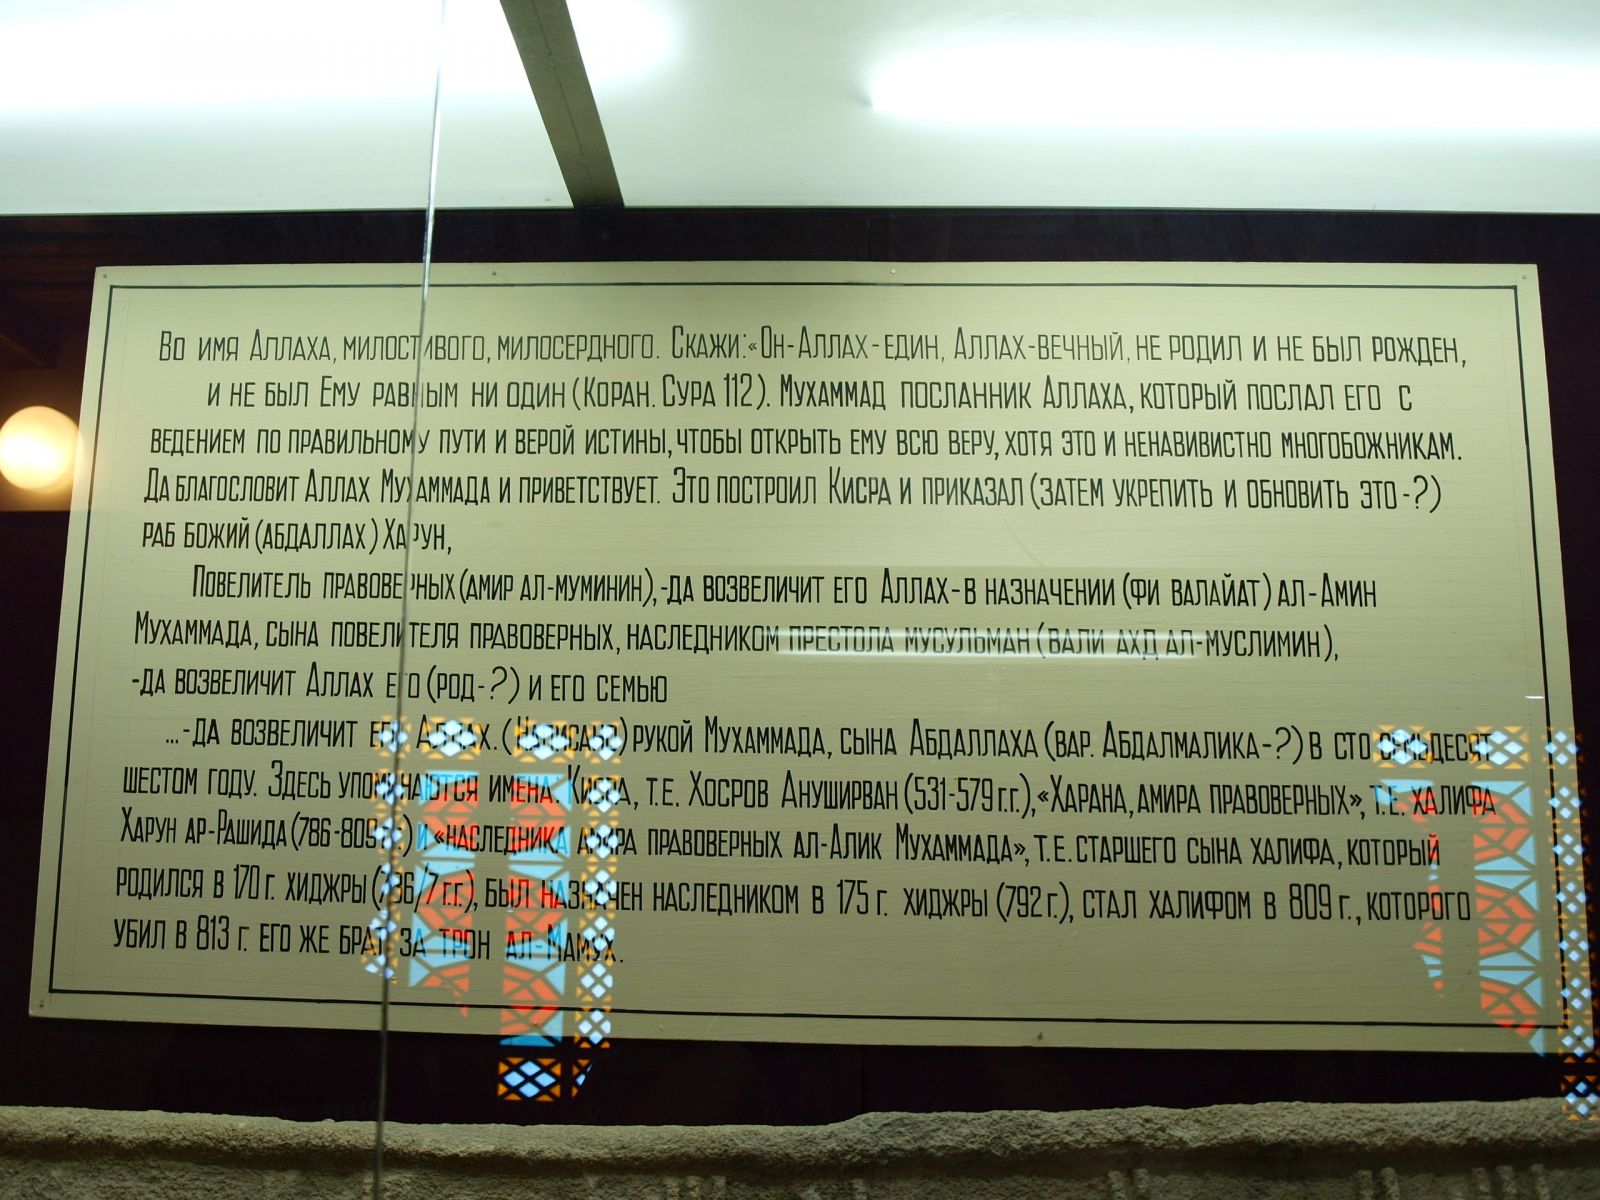 Памятный камень 176 г.х. в музее Дербента, Перевод текста в музее